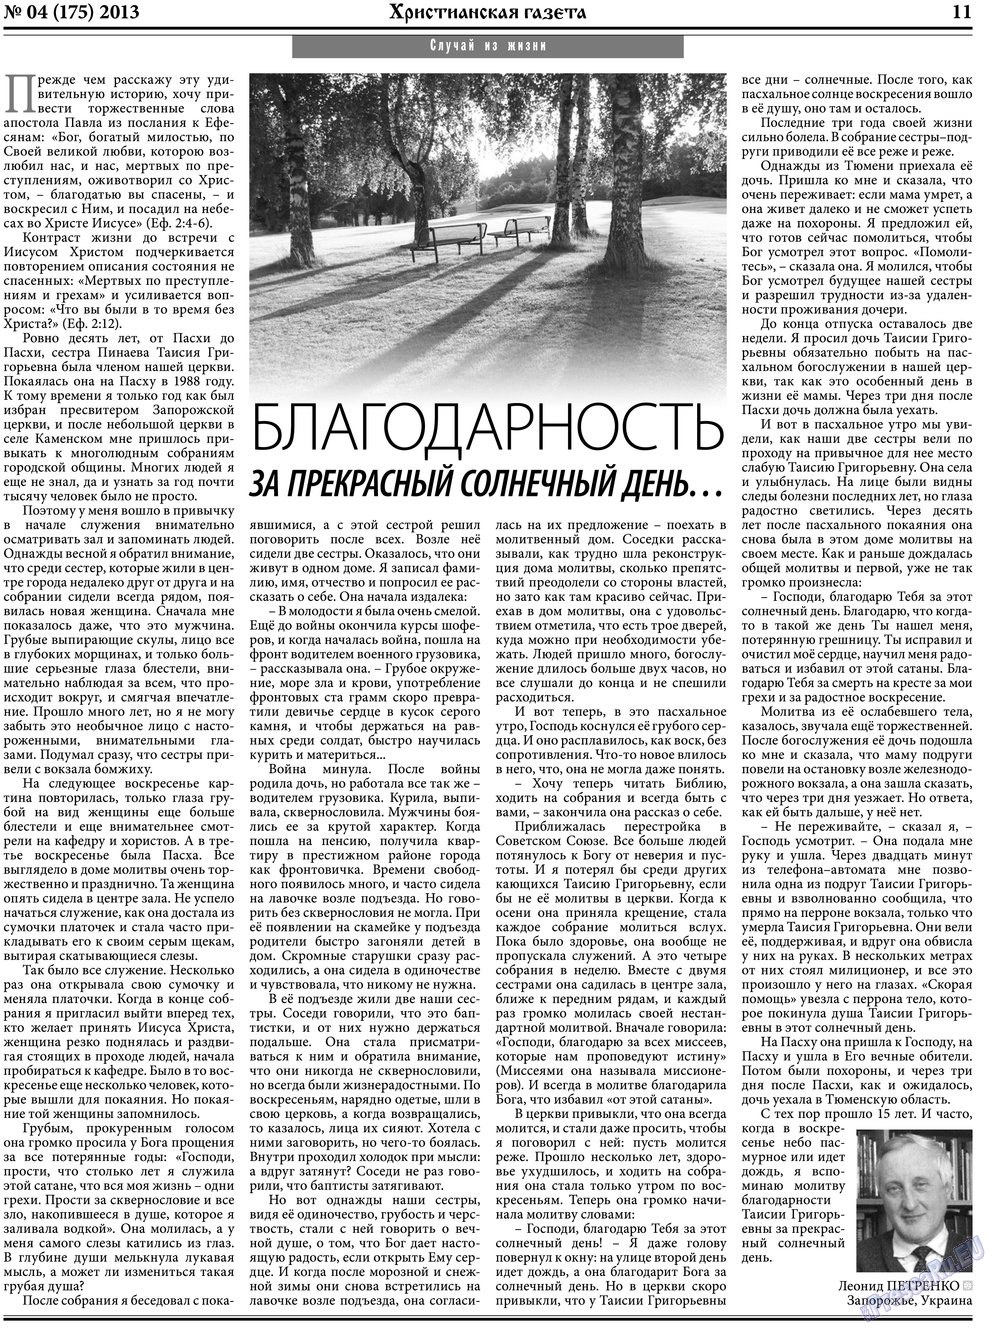 Христианская газета, газета. 2013 №4 стр.11